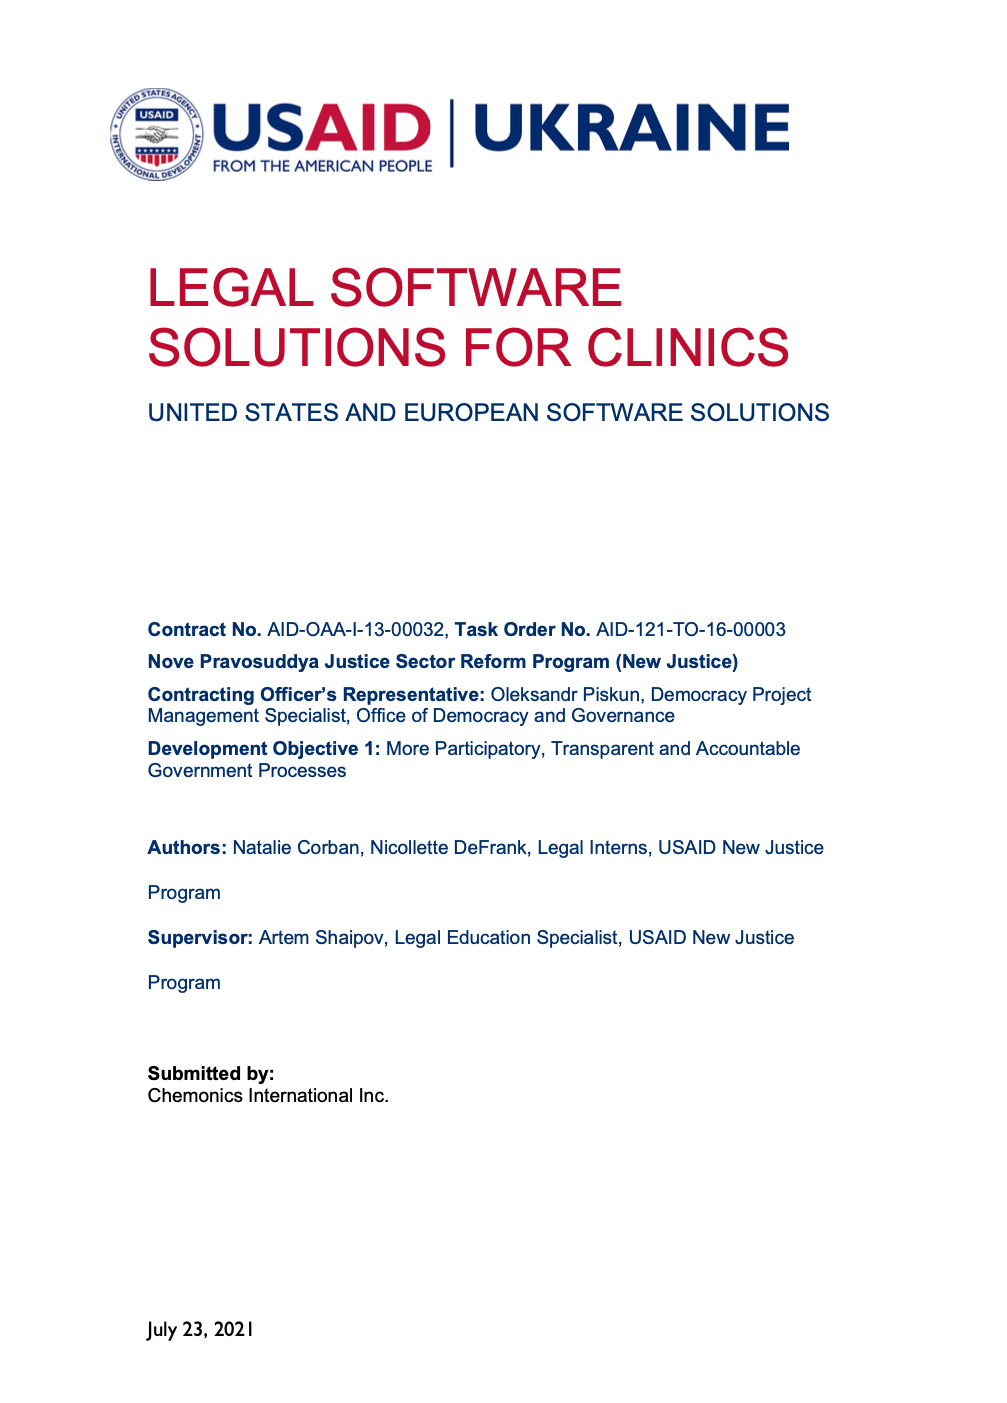 Технічні рішення для юридичних клінік. Технічні рішення США та Європи